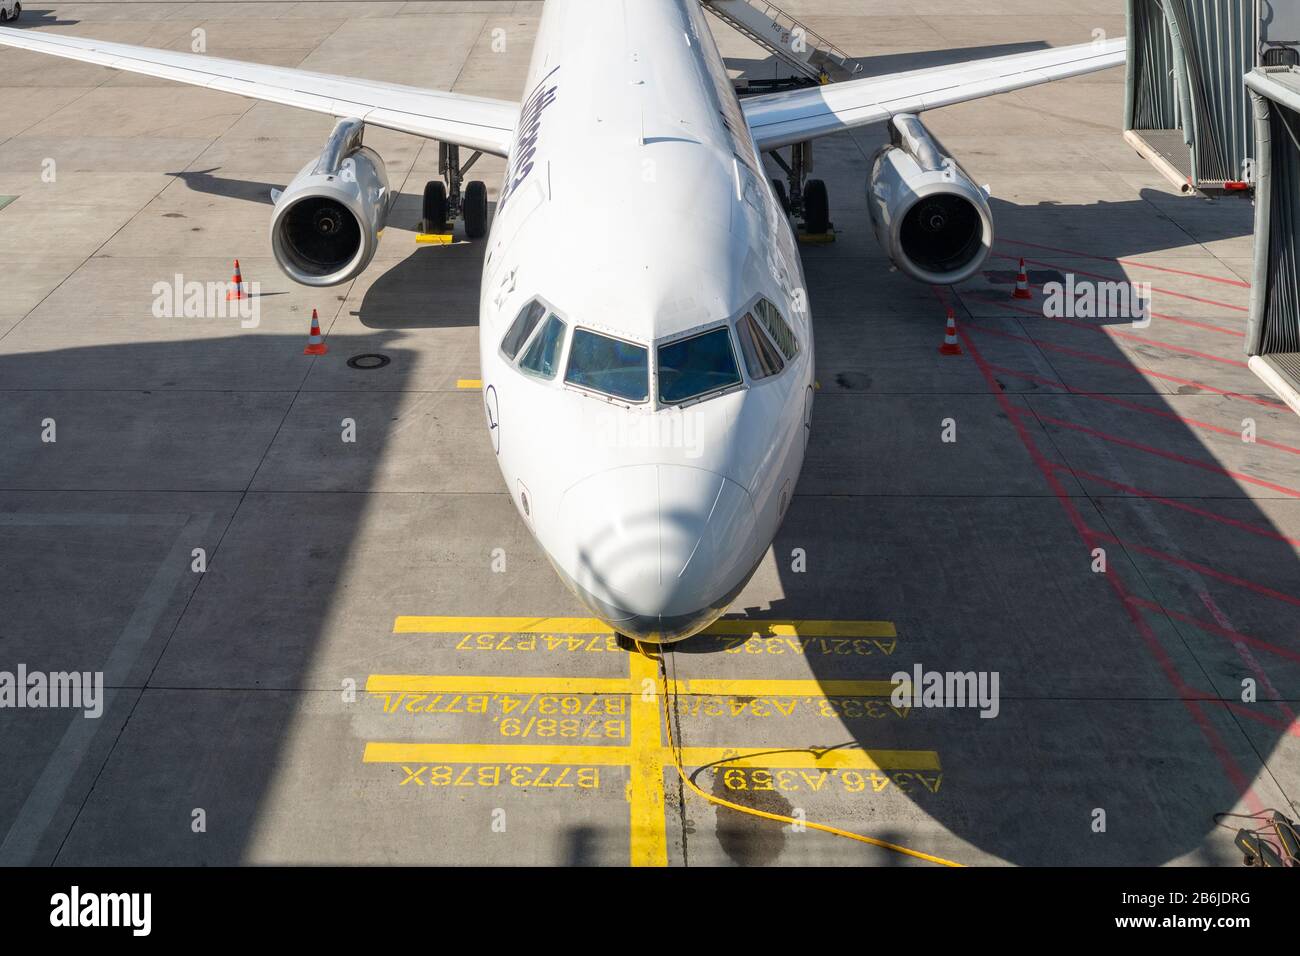 Indicatori di parcheggio degli aerei - aeroporto di Francoforte, Germania Foto Stock